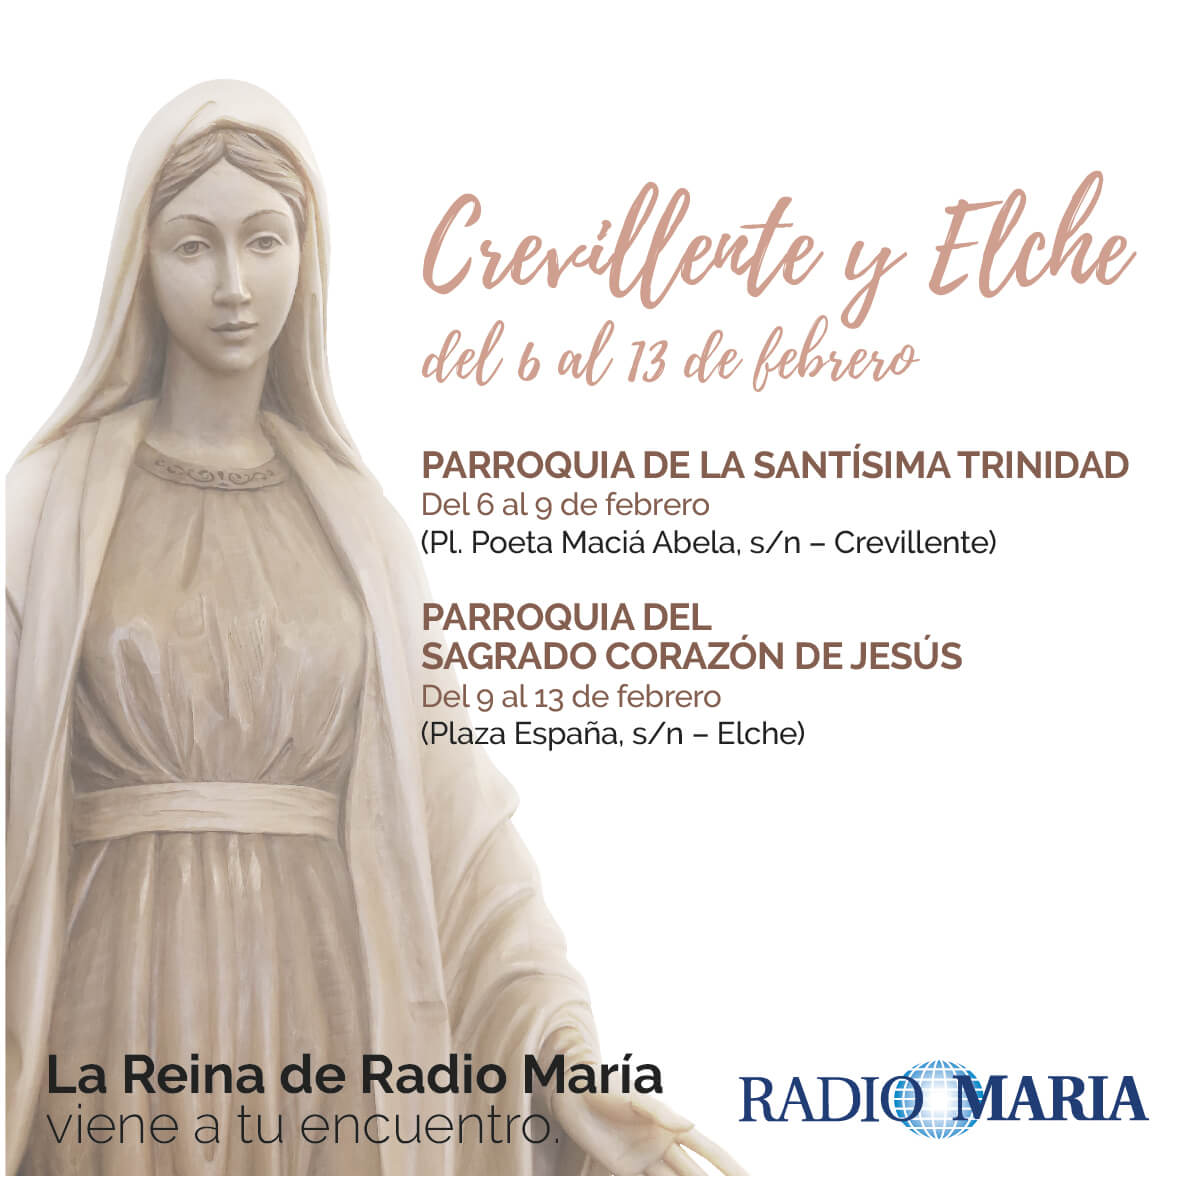 La Reina de Radio María en Crevillente y Elche